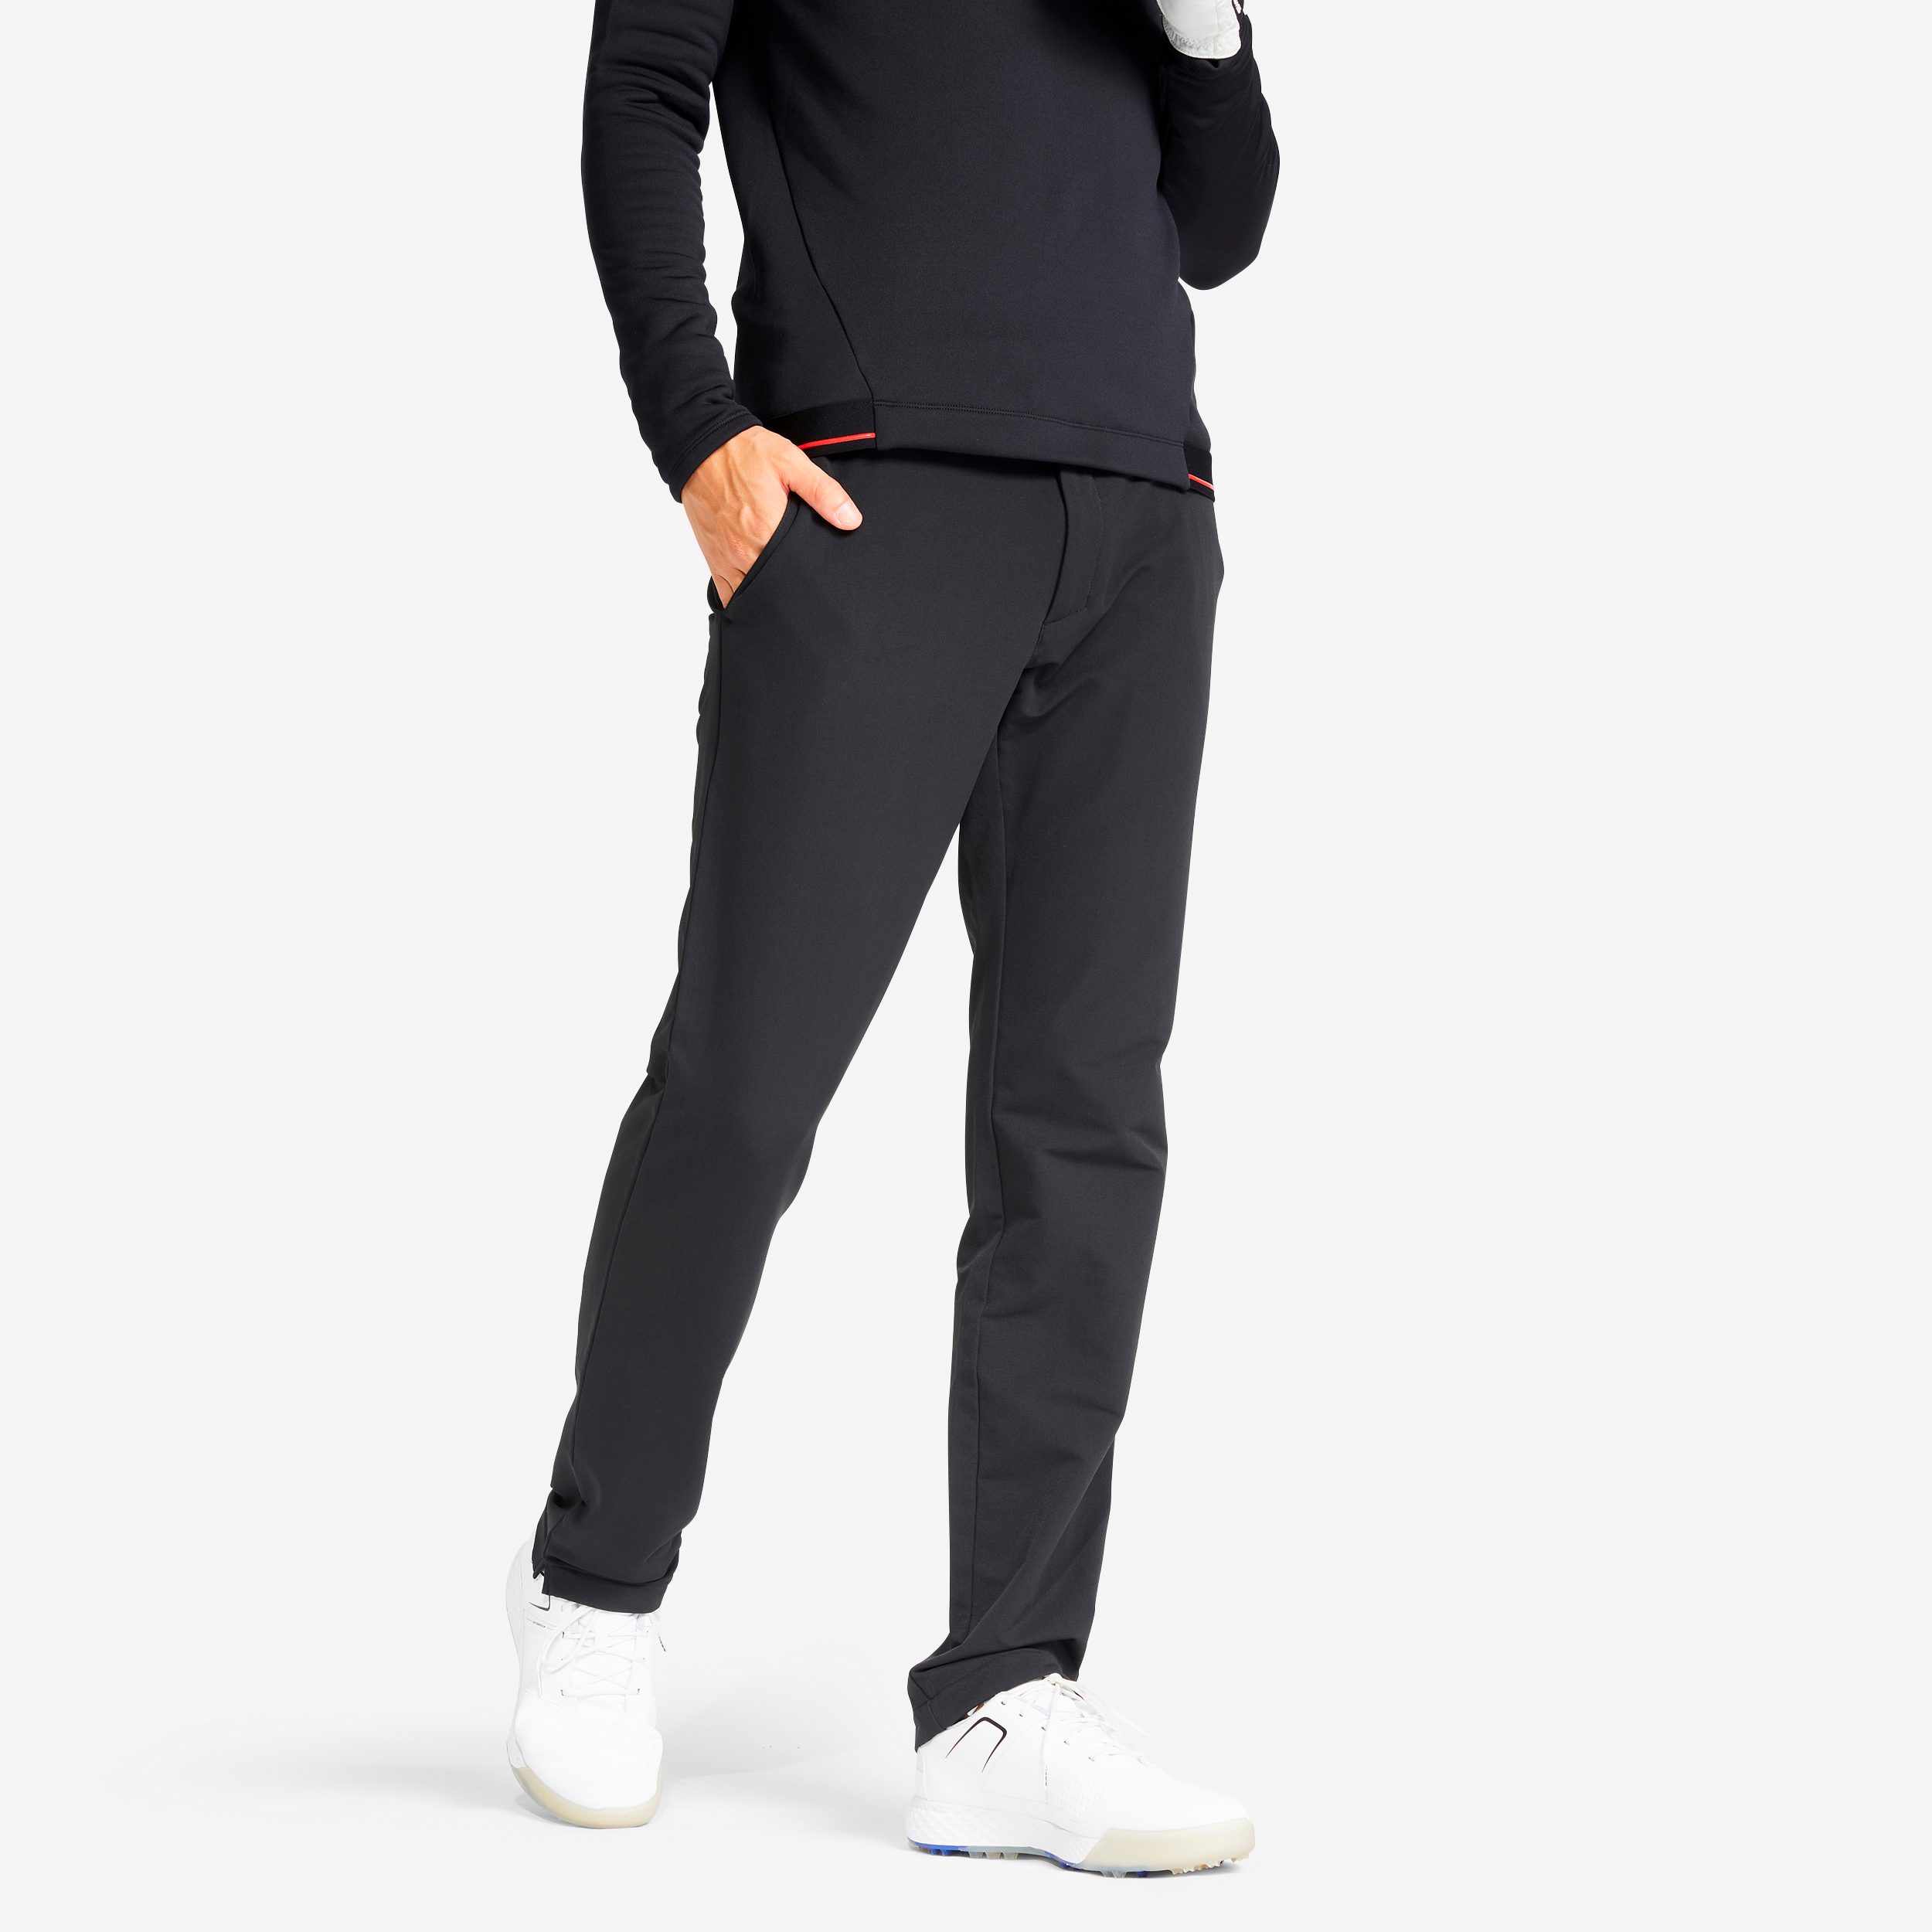 Pantalon de golf hiver Homme - CW500 noir pour les clubs et collectivités